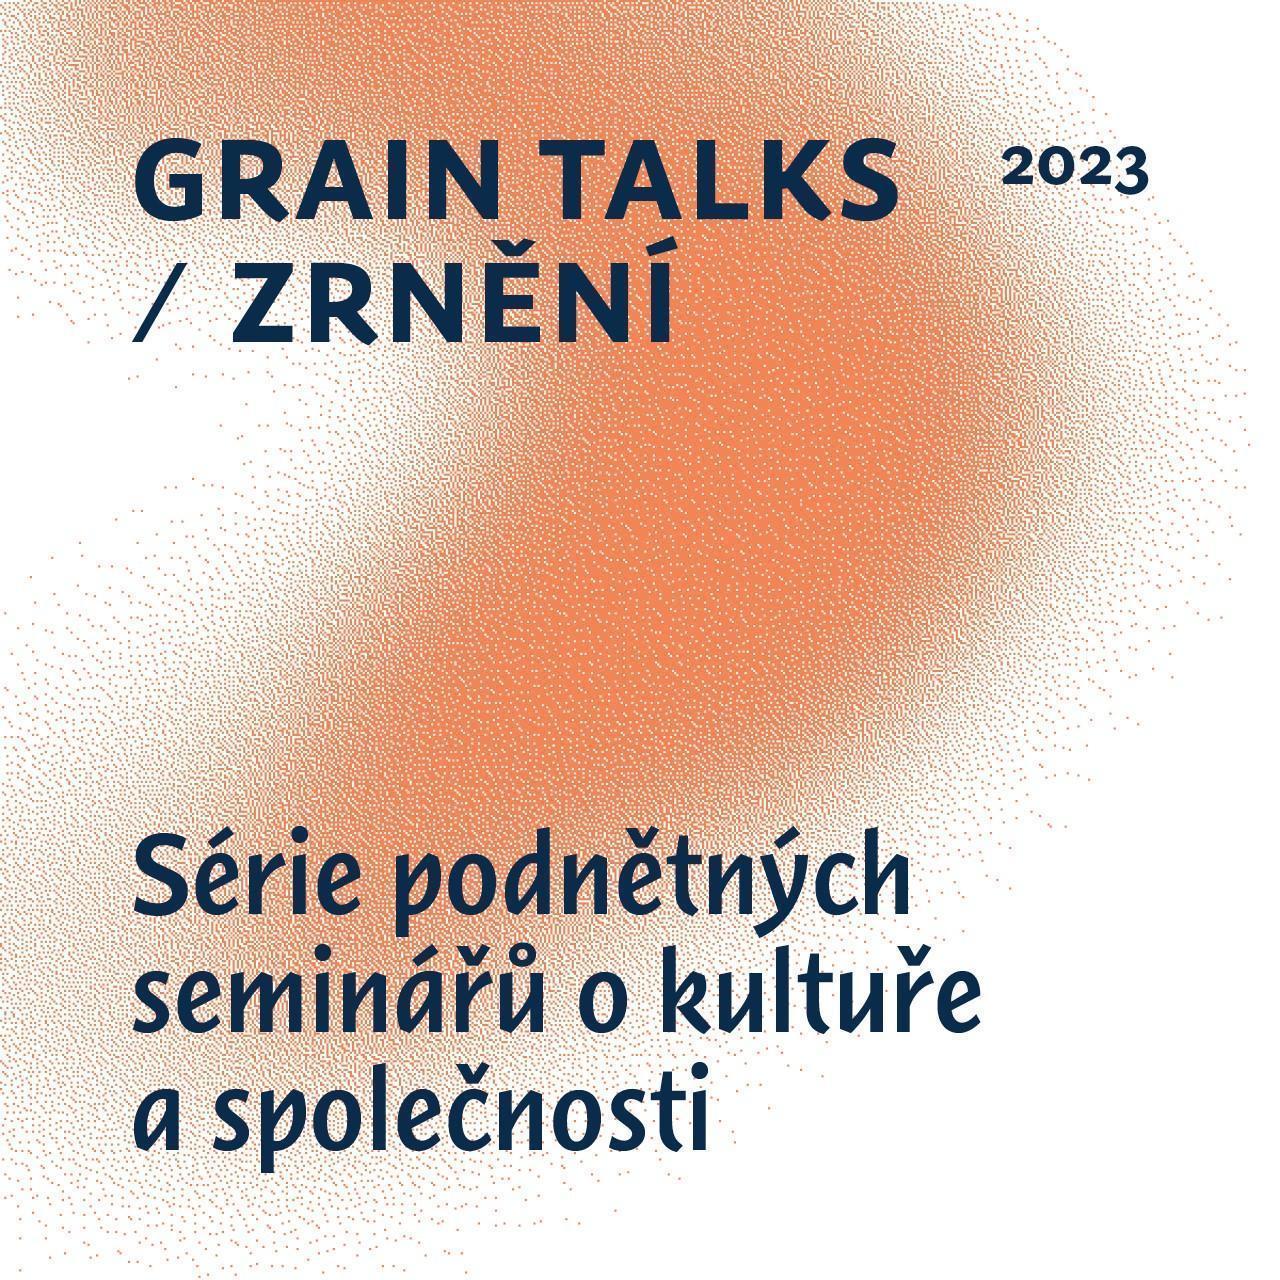 Přečtete si více ze článku Grain Talks / Zrnění <br> Serie podnětných seminářů